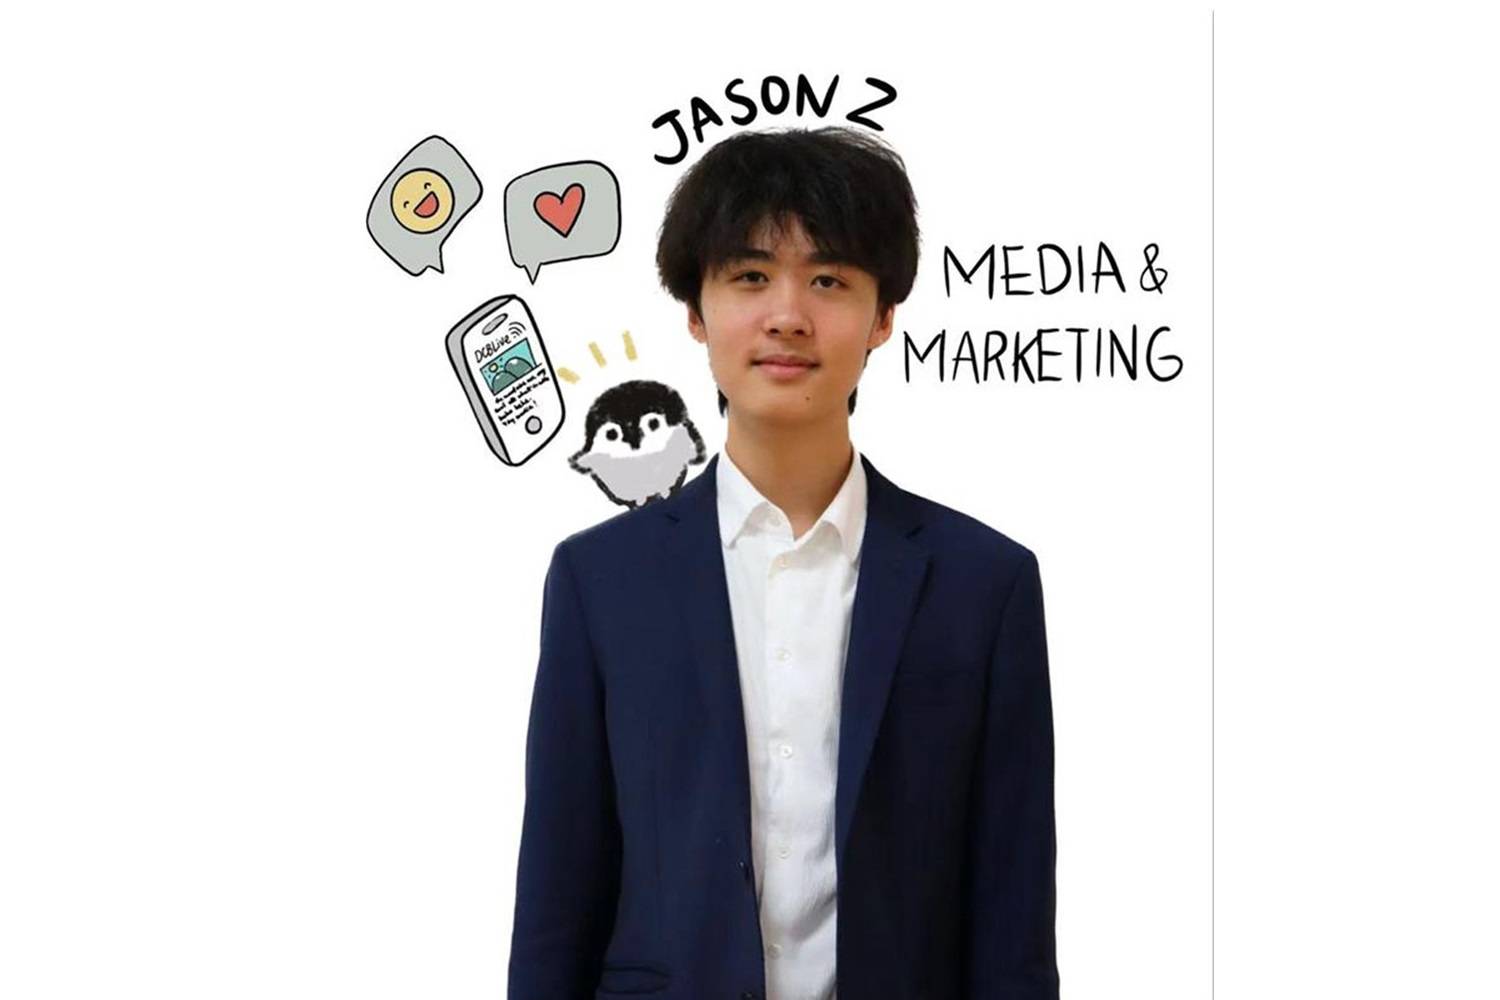 媒体和市场学生代表：Jason Z